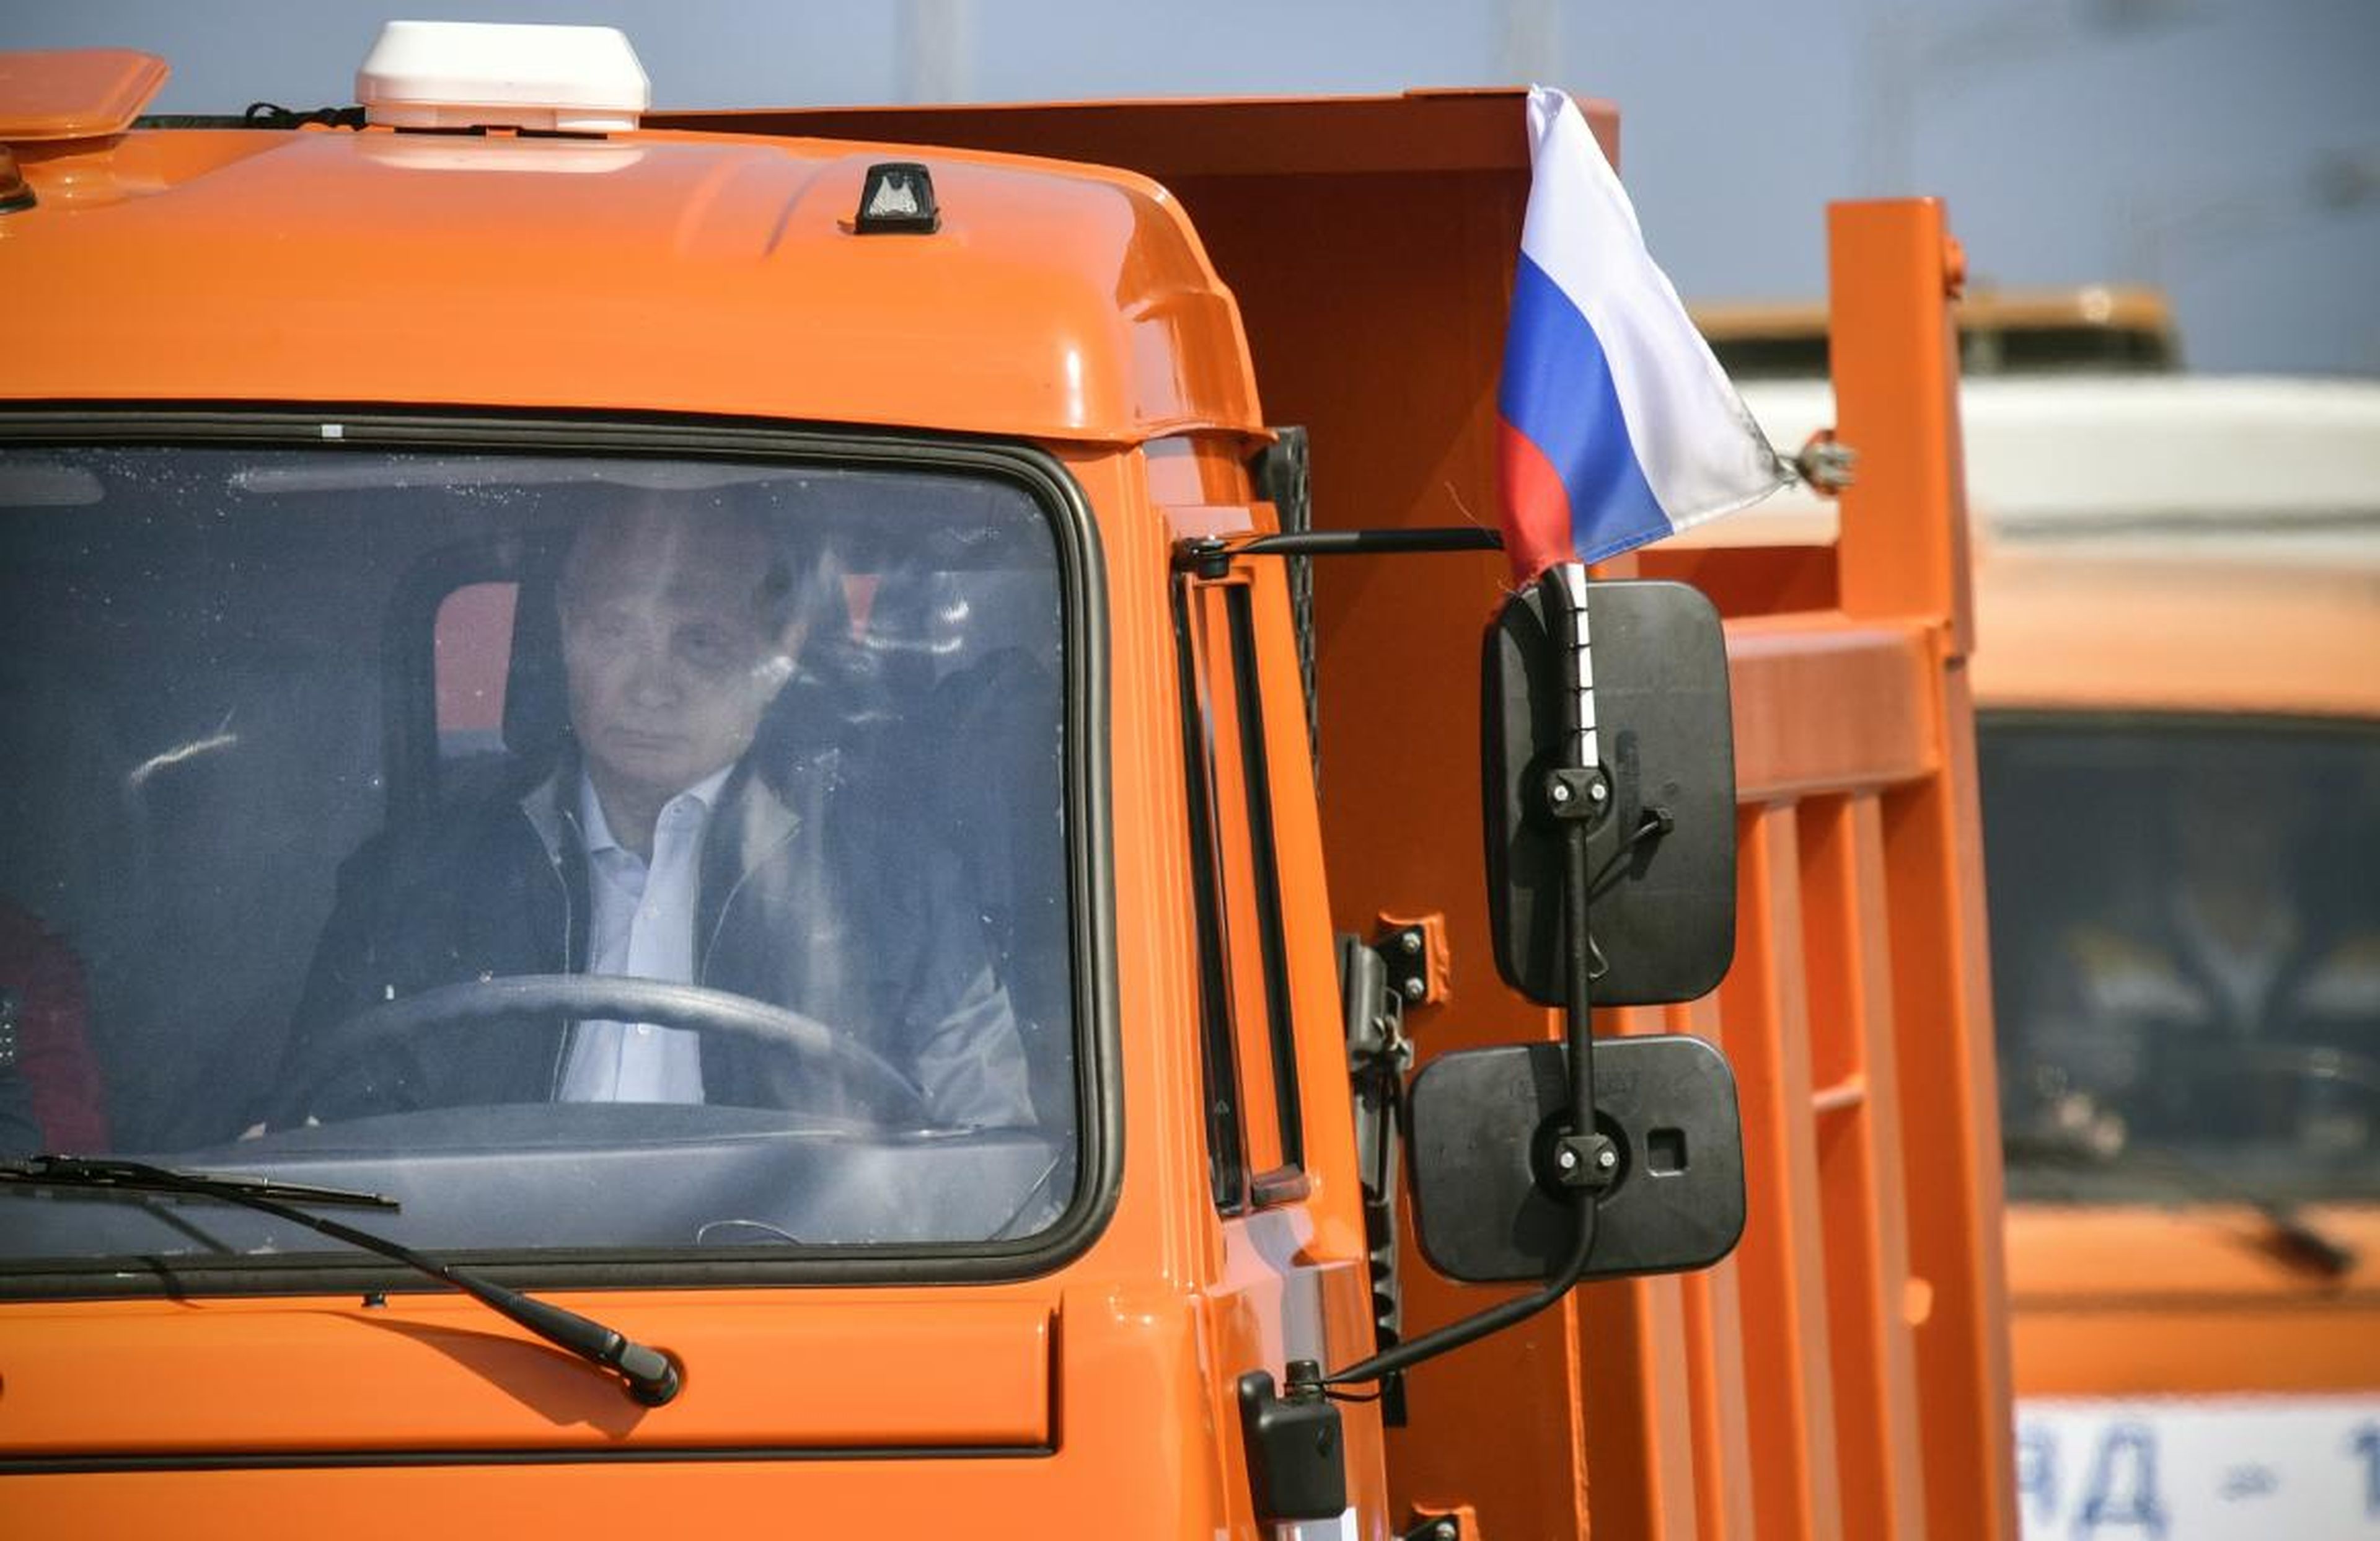 Putin conduce un camión en la inauguración del puente sobre el estrecho de Kerch en 2018. Los hackers desactivaron parcialmente los sistemas de navegación de los barcos cercanos durante el evento.